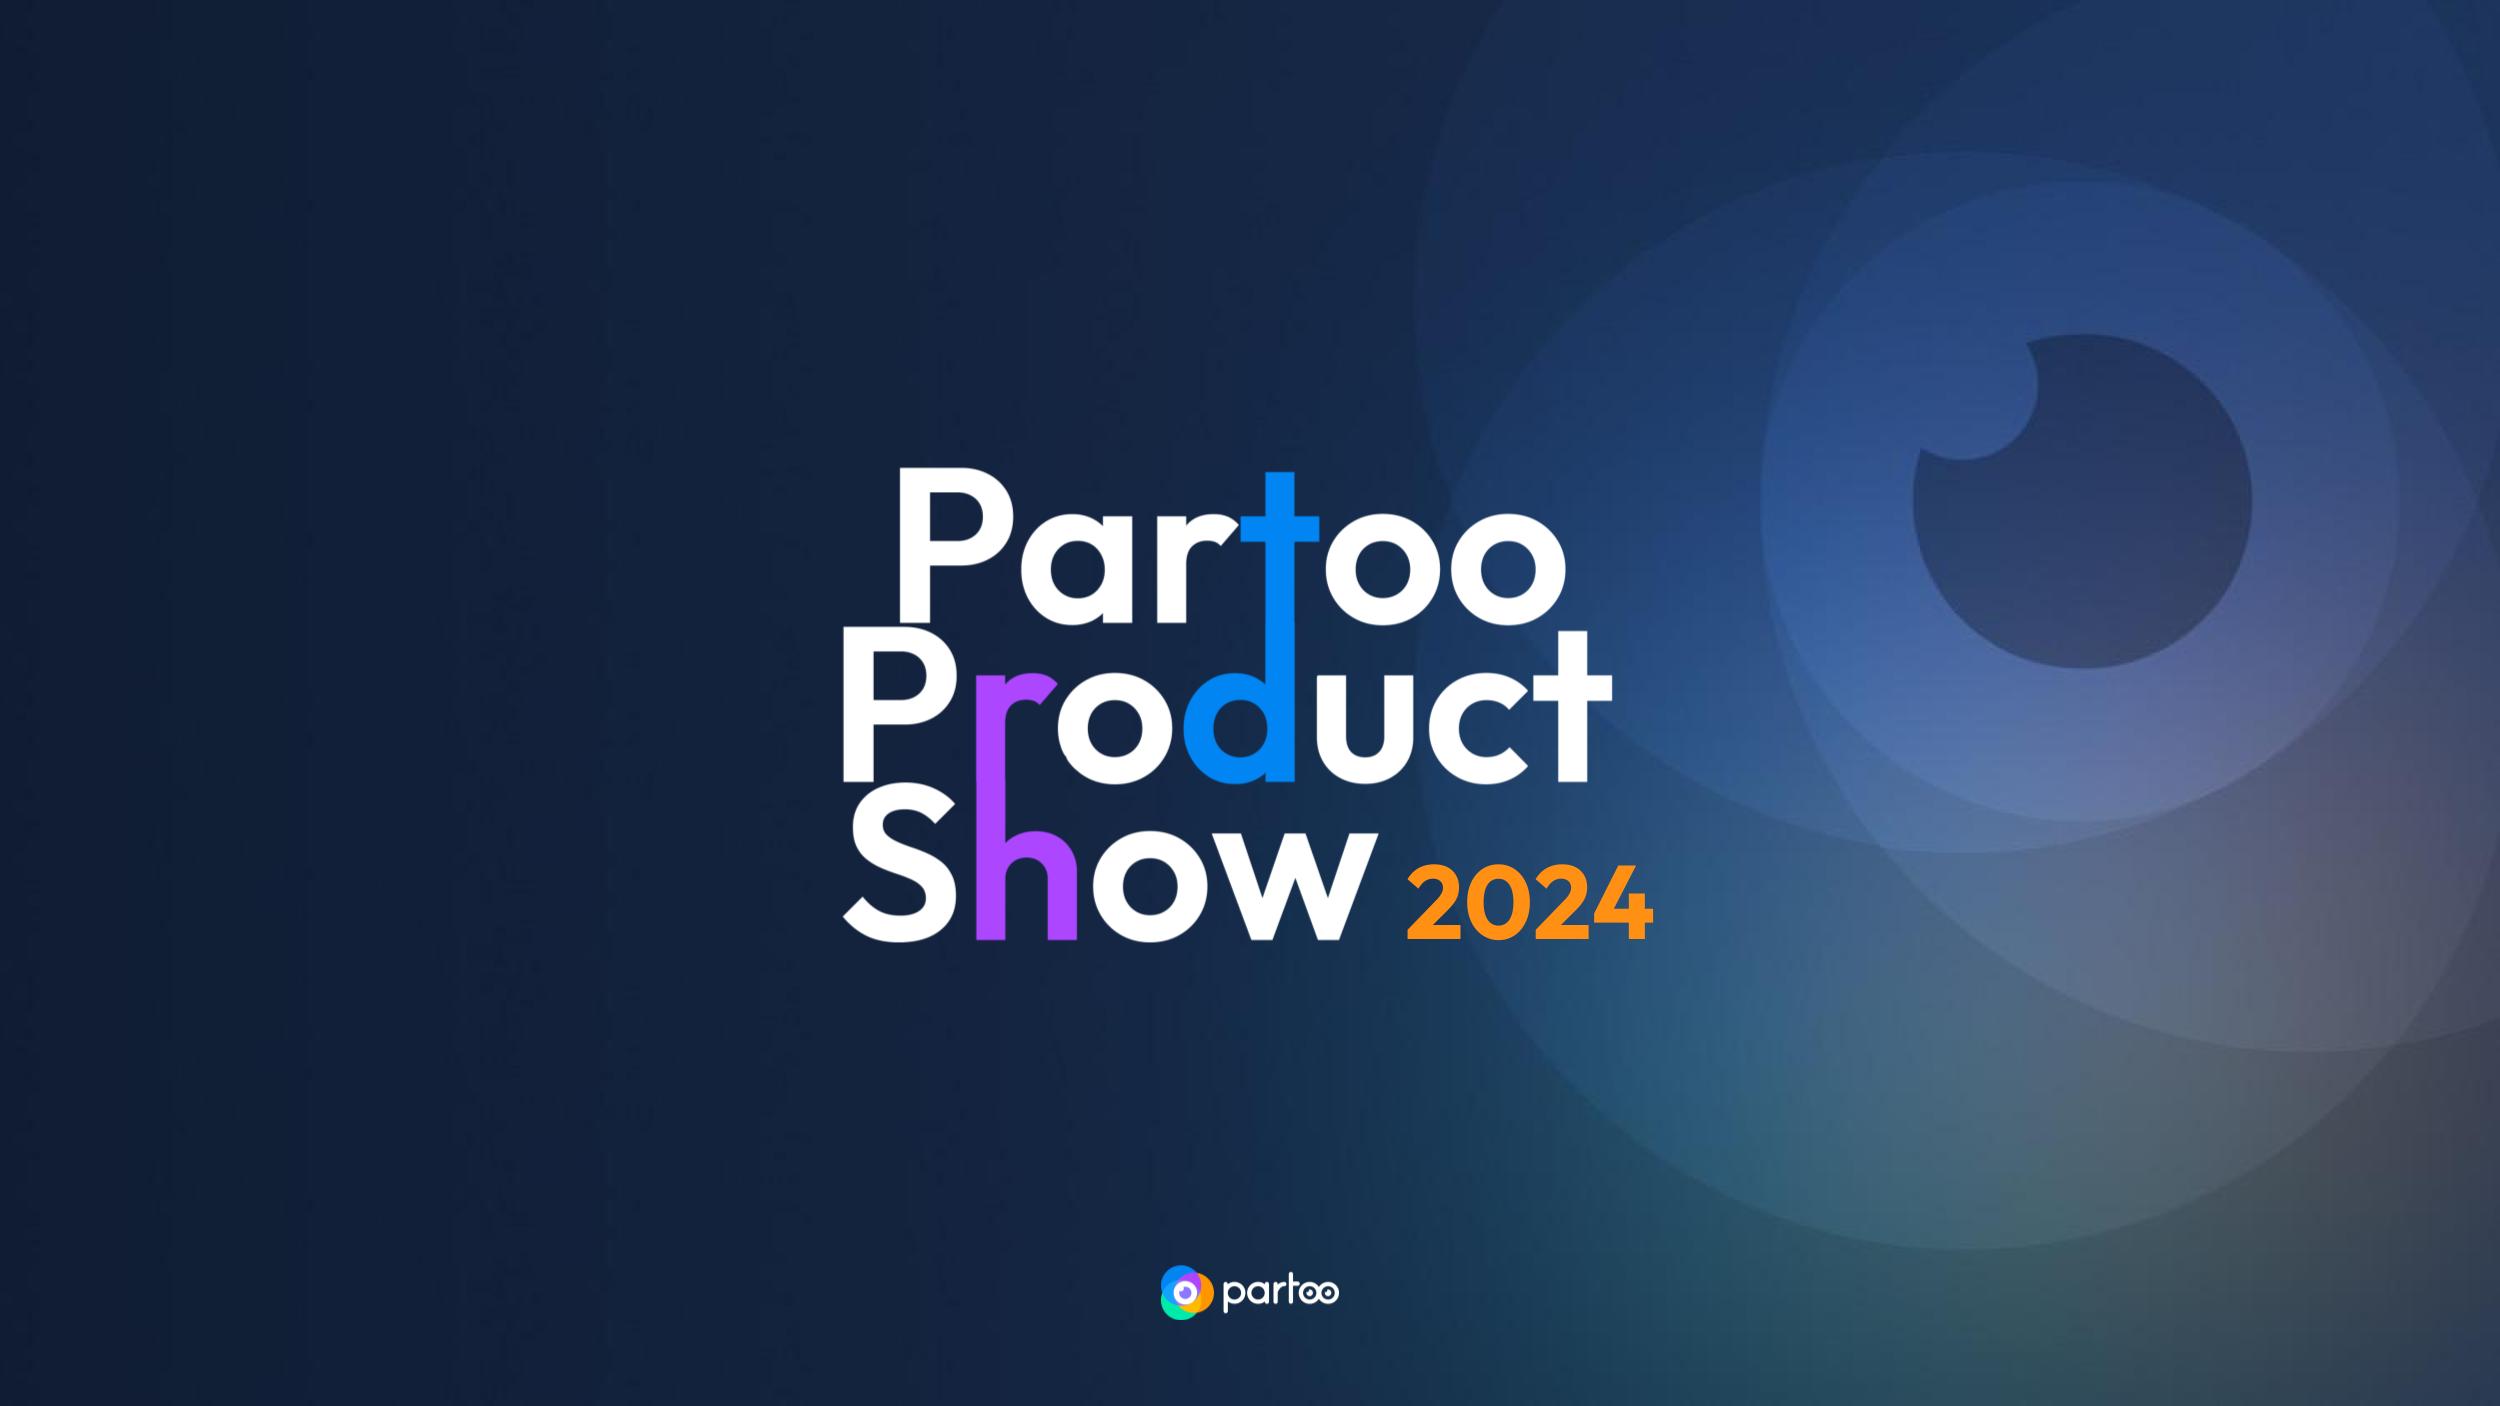 visuel de l'évènement Partoo Product Show